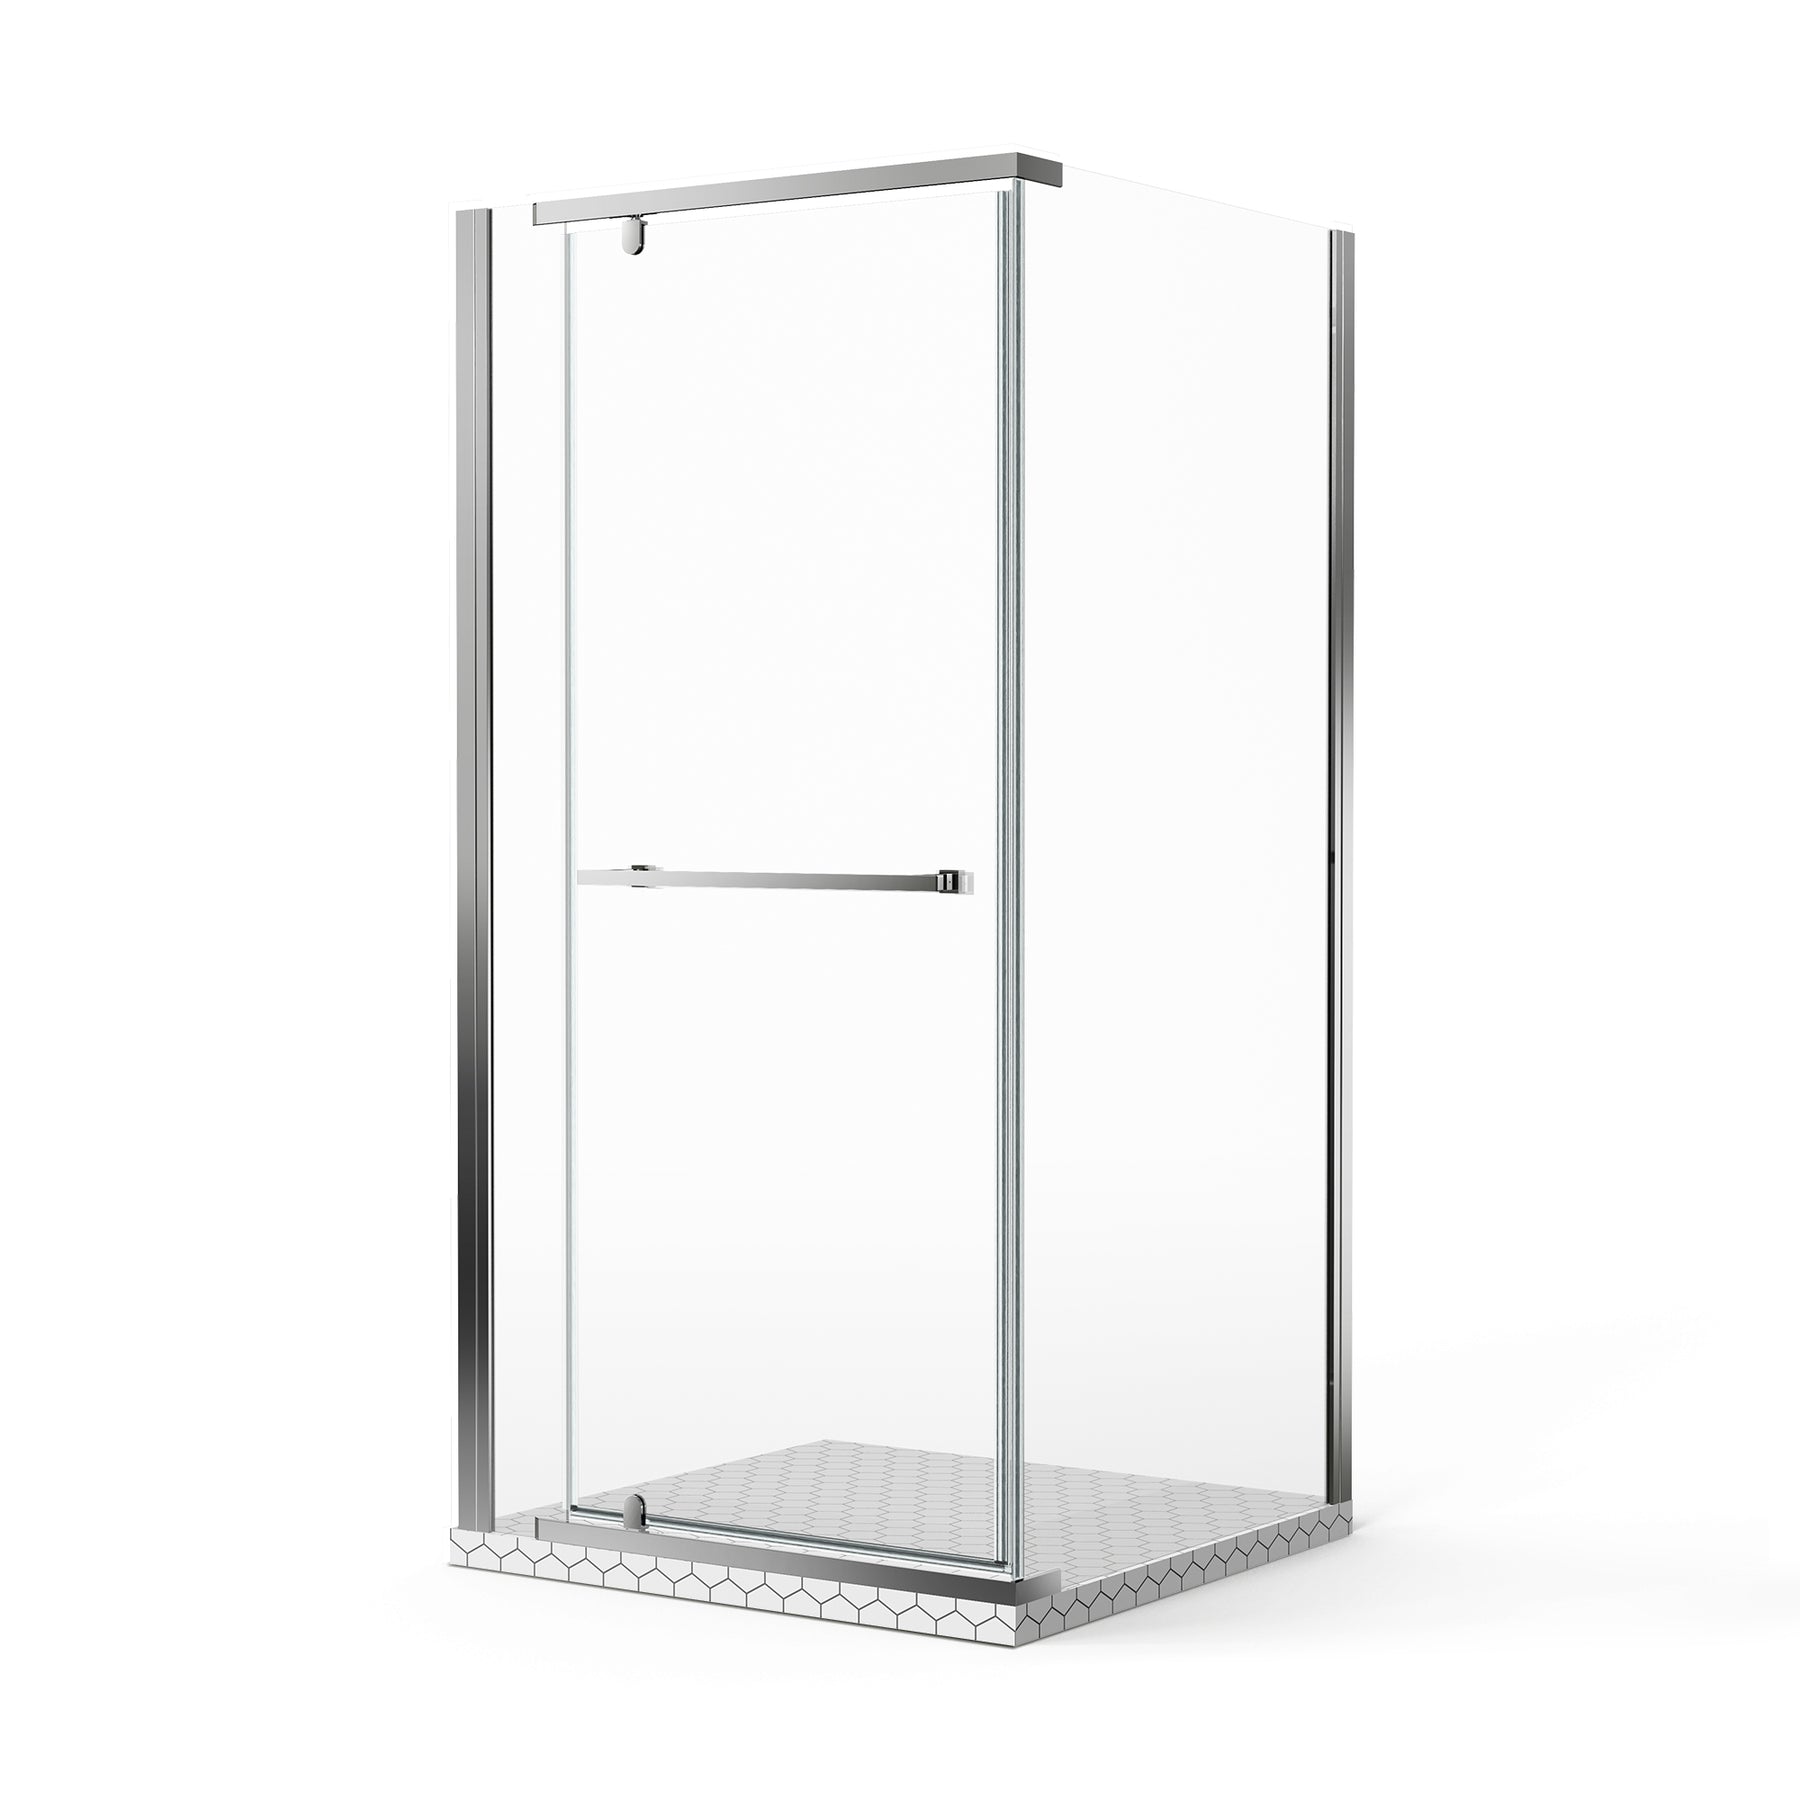 SL4U frameless pivot shower door in chrome